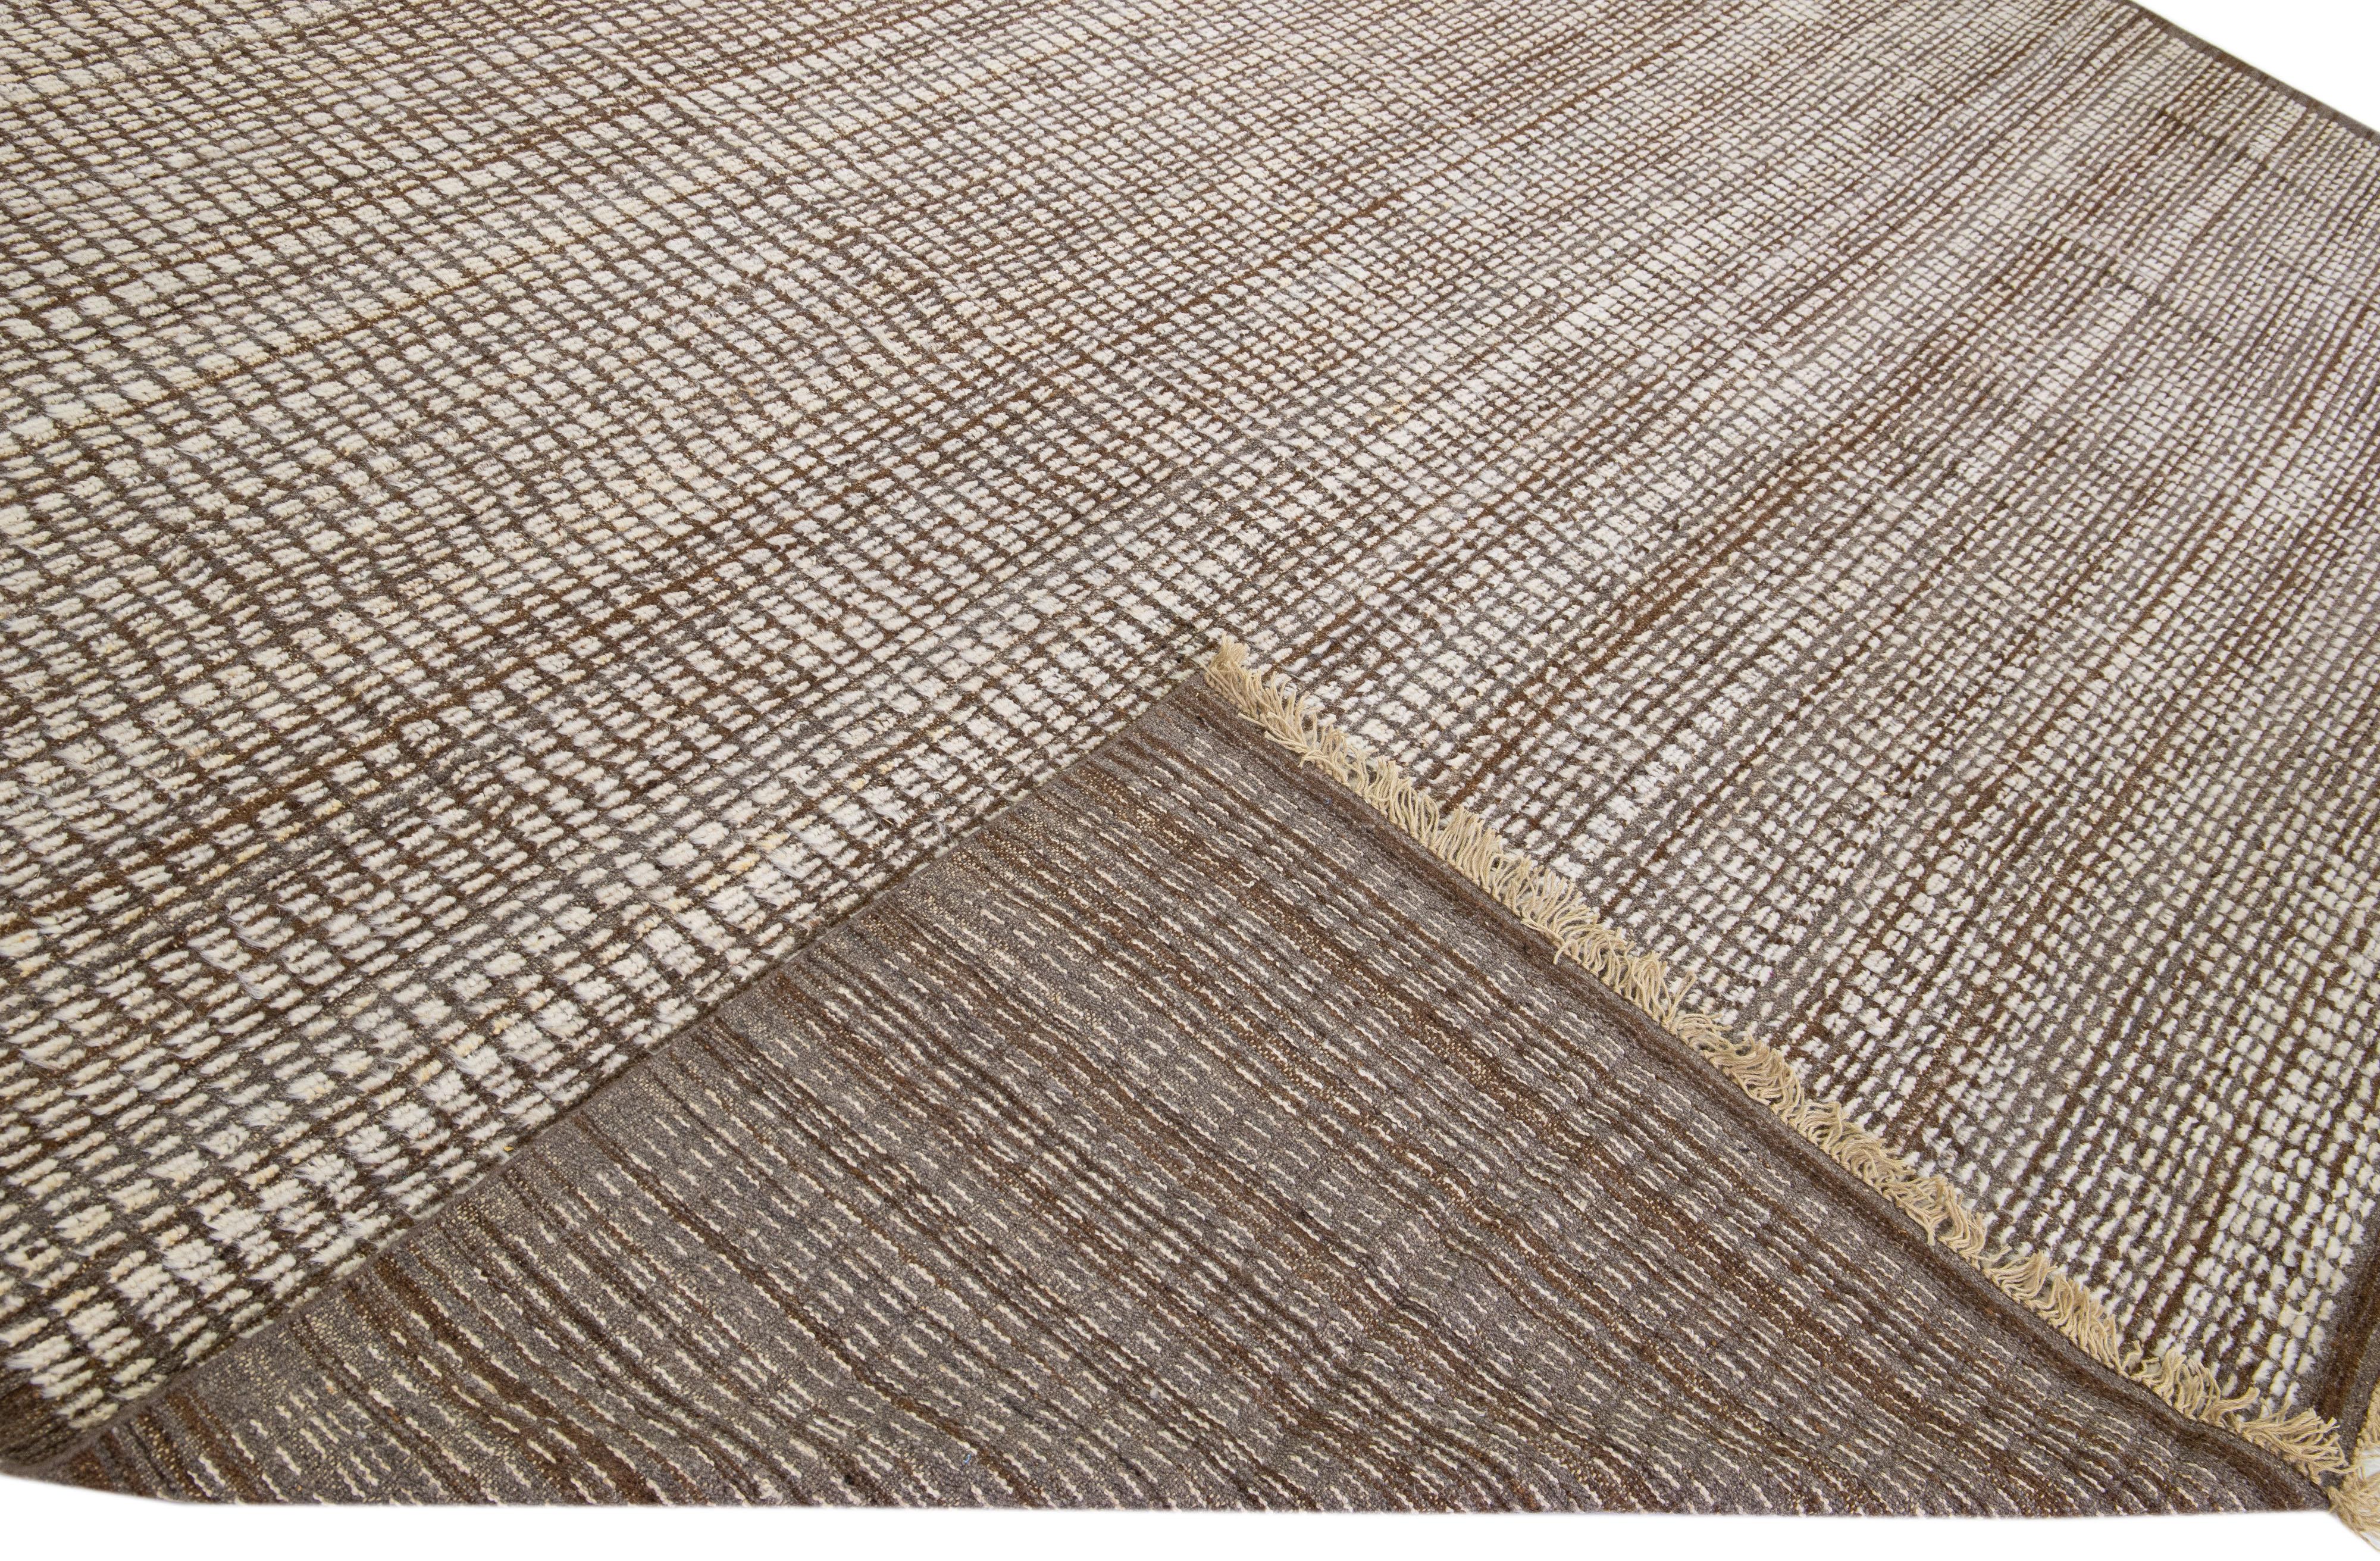 Schöner moderner, handgeknüpfter Wollteppich im marokkanischen Stil mit einem braunen Feld. Dieses Stück hat ein wunderschönes subtiles geometrisches Muster.

Dieser Teppich misst: 12'5